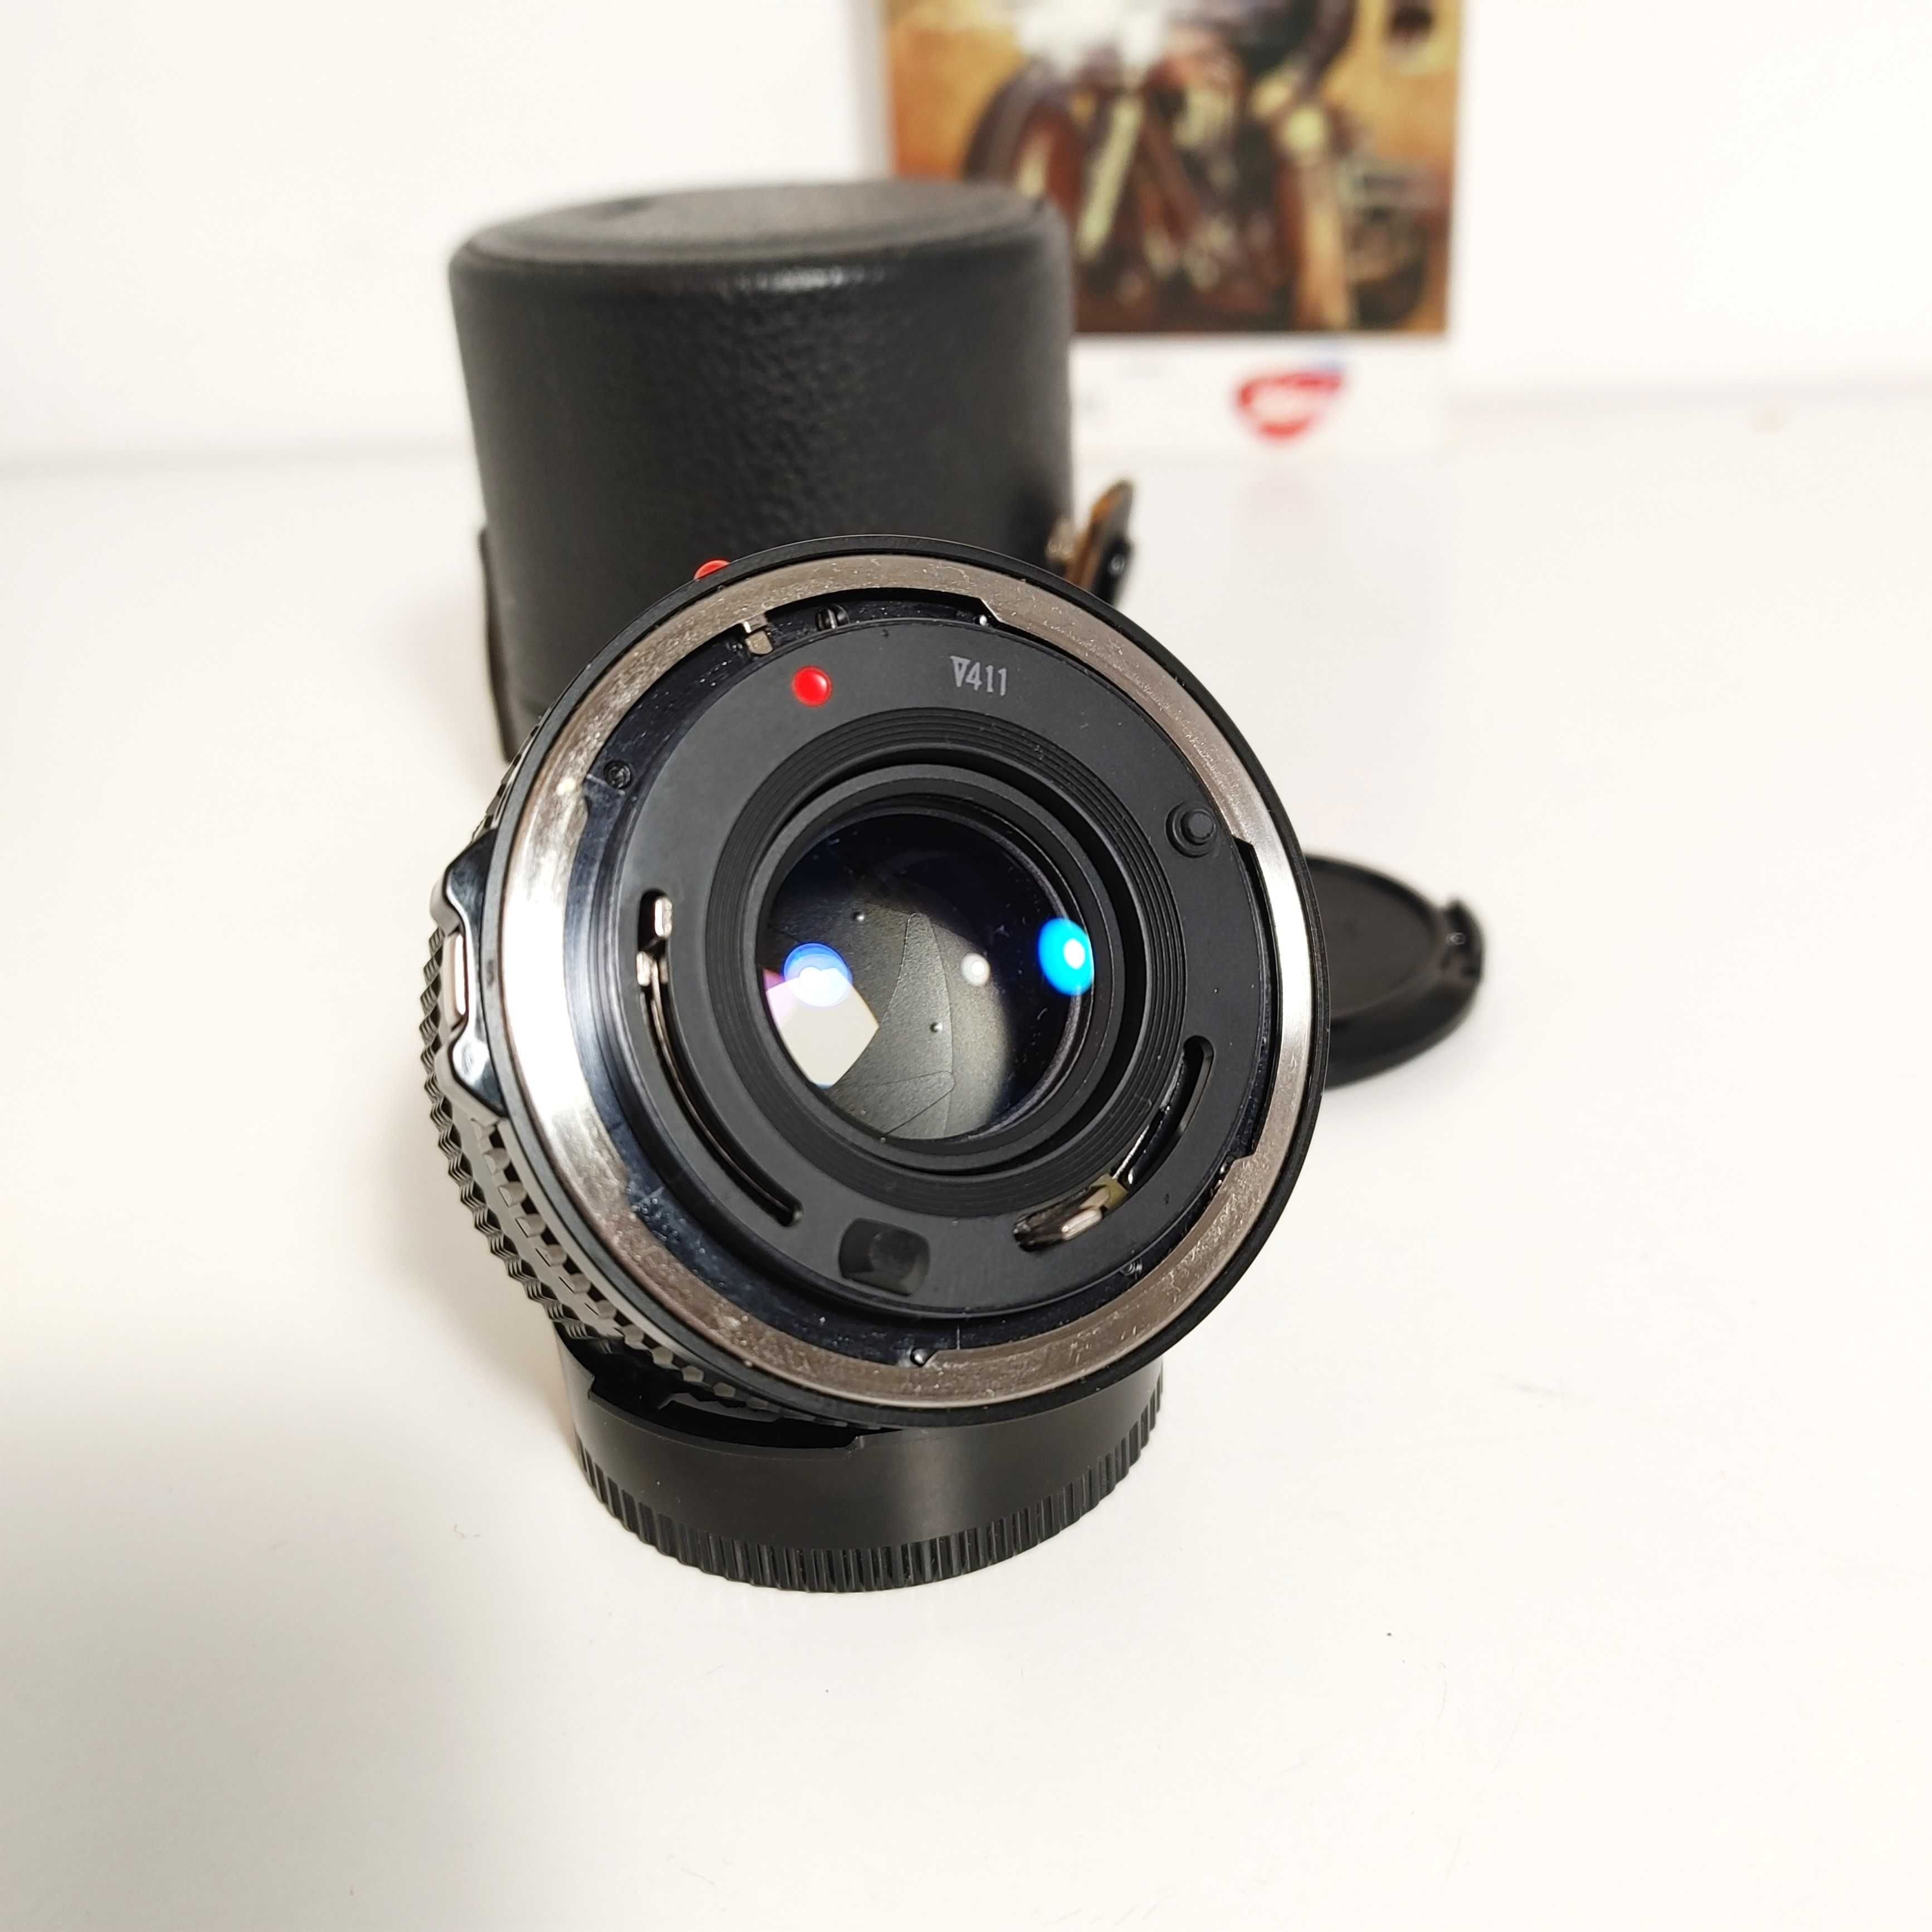 Jasny Obiektyw Canon FD 1:1,8 50mm mocowanie Canon FD